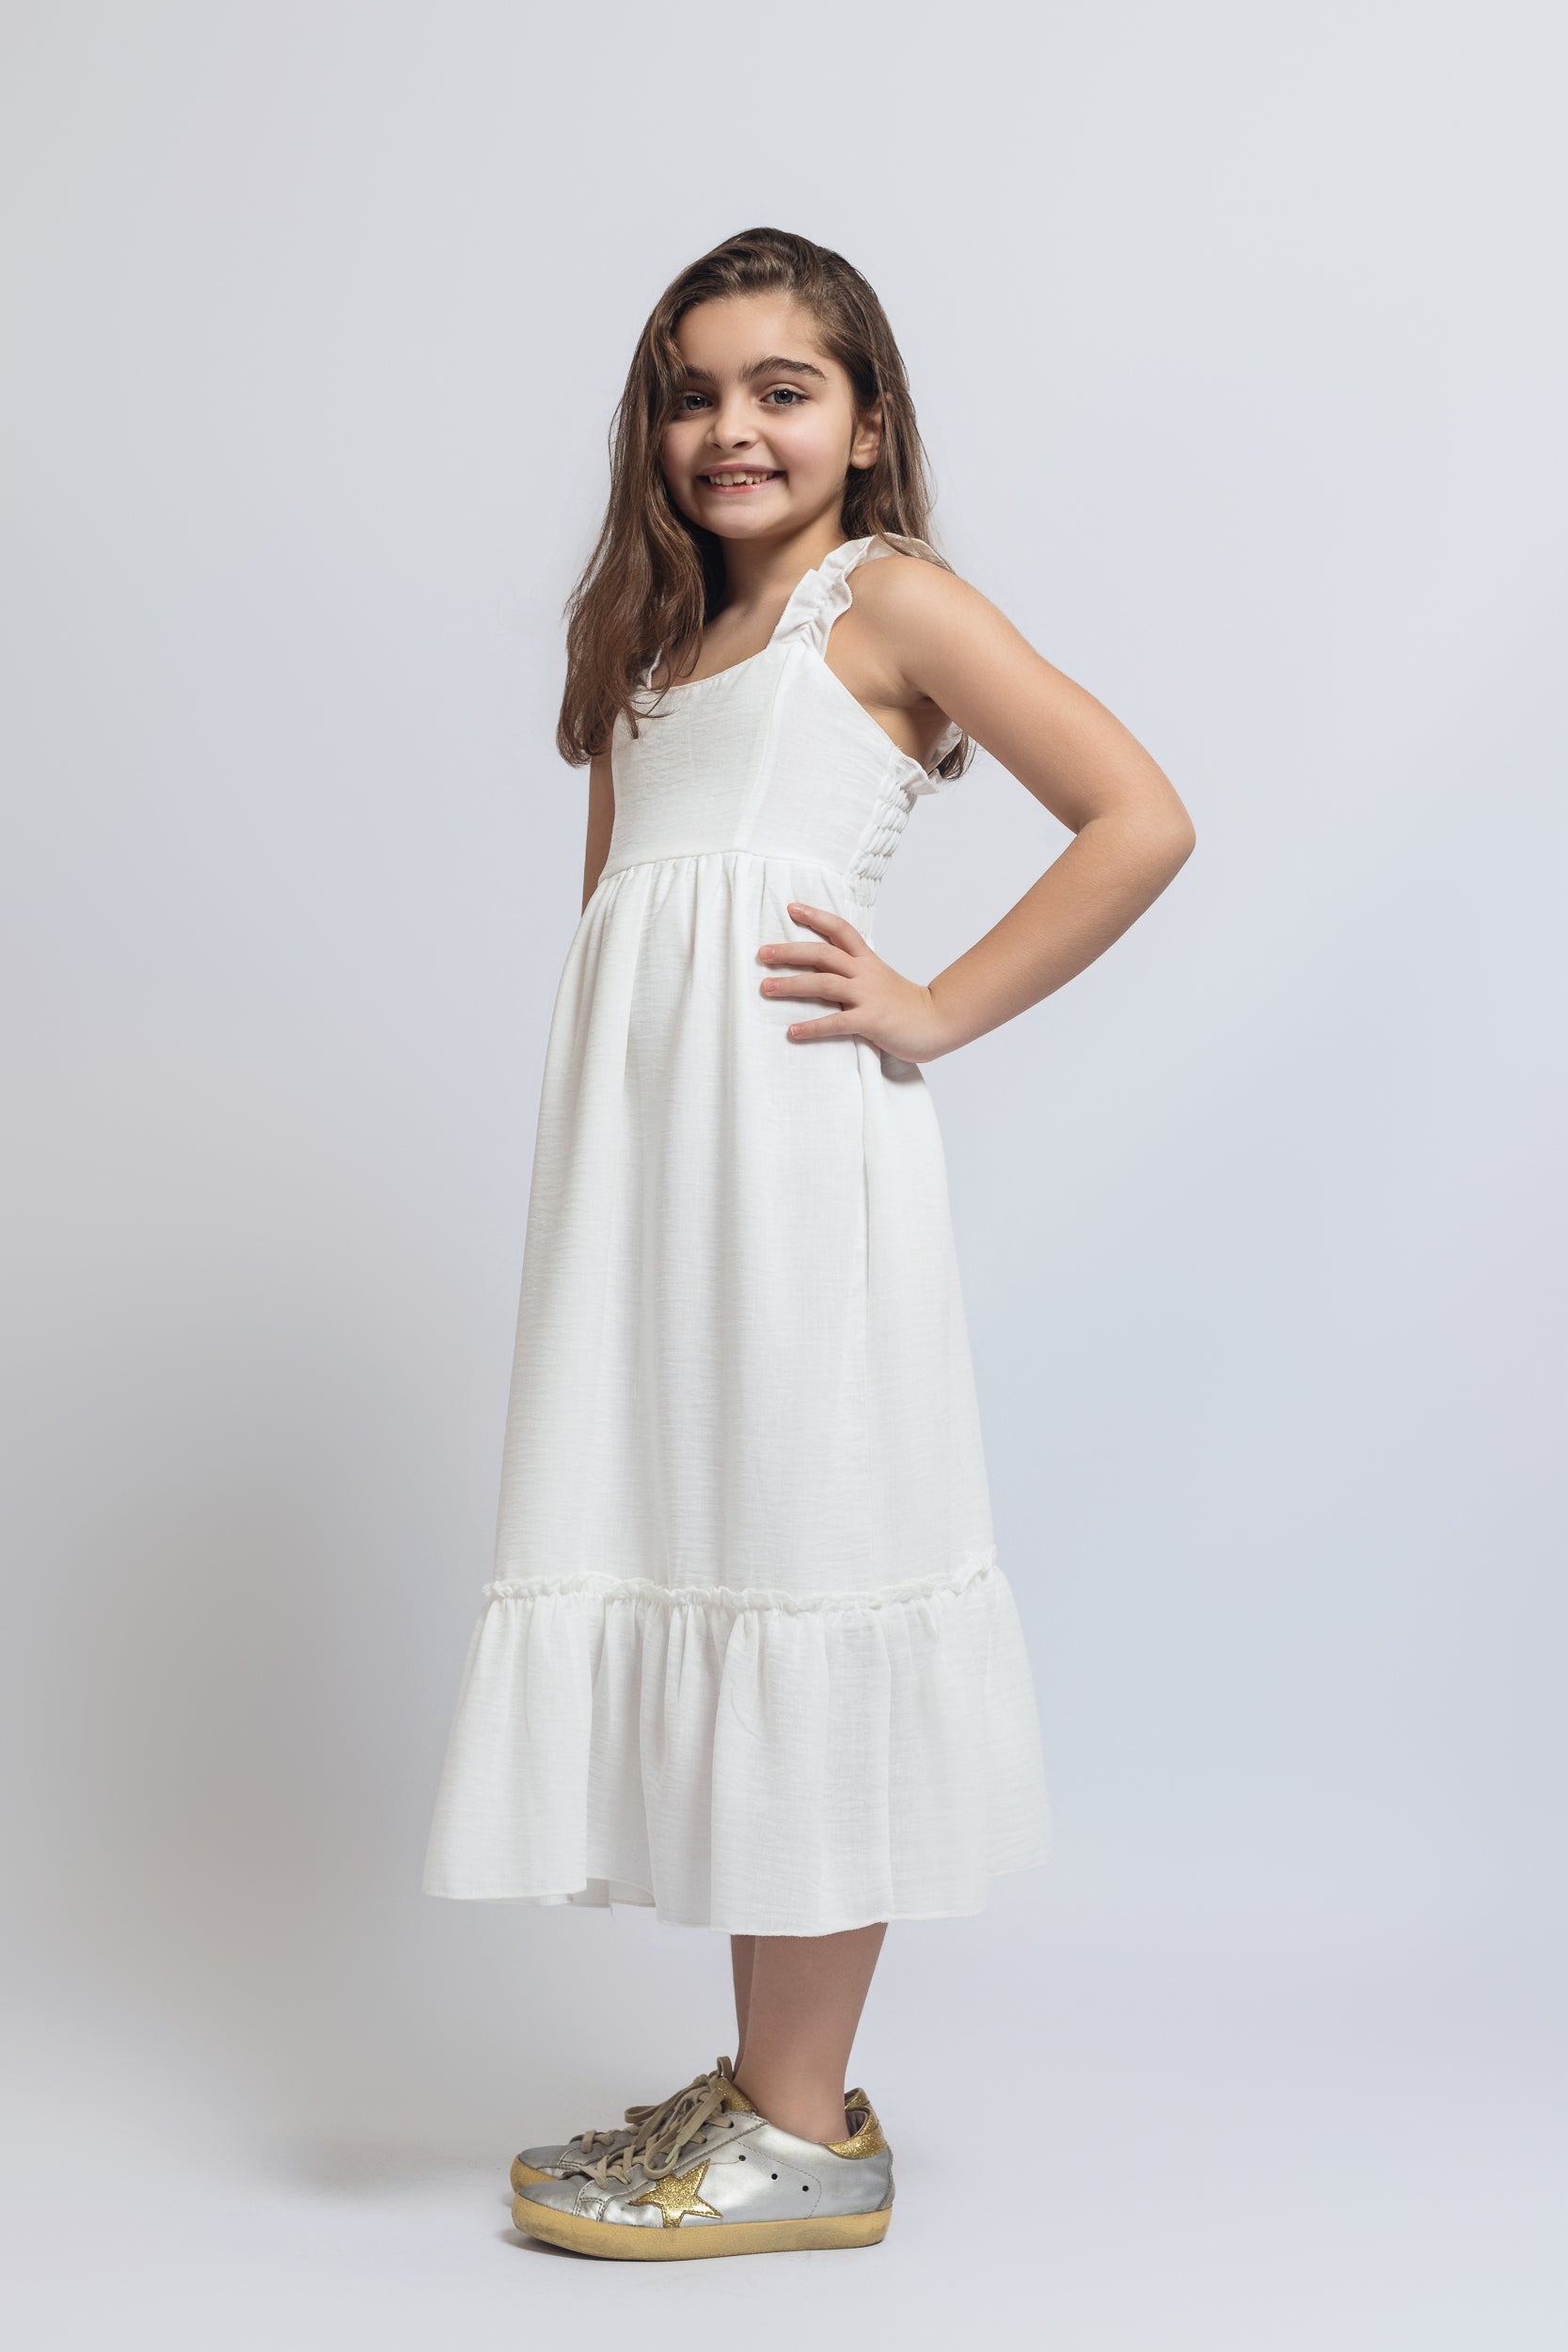 Ruffled Sleeved Dress For Girls - White